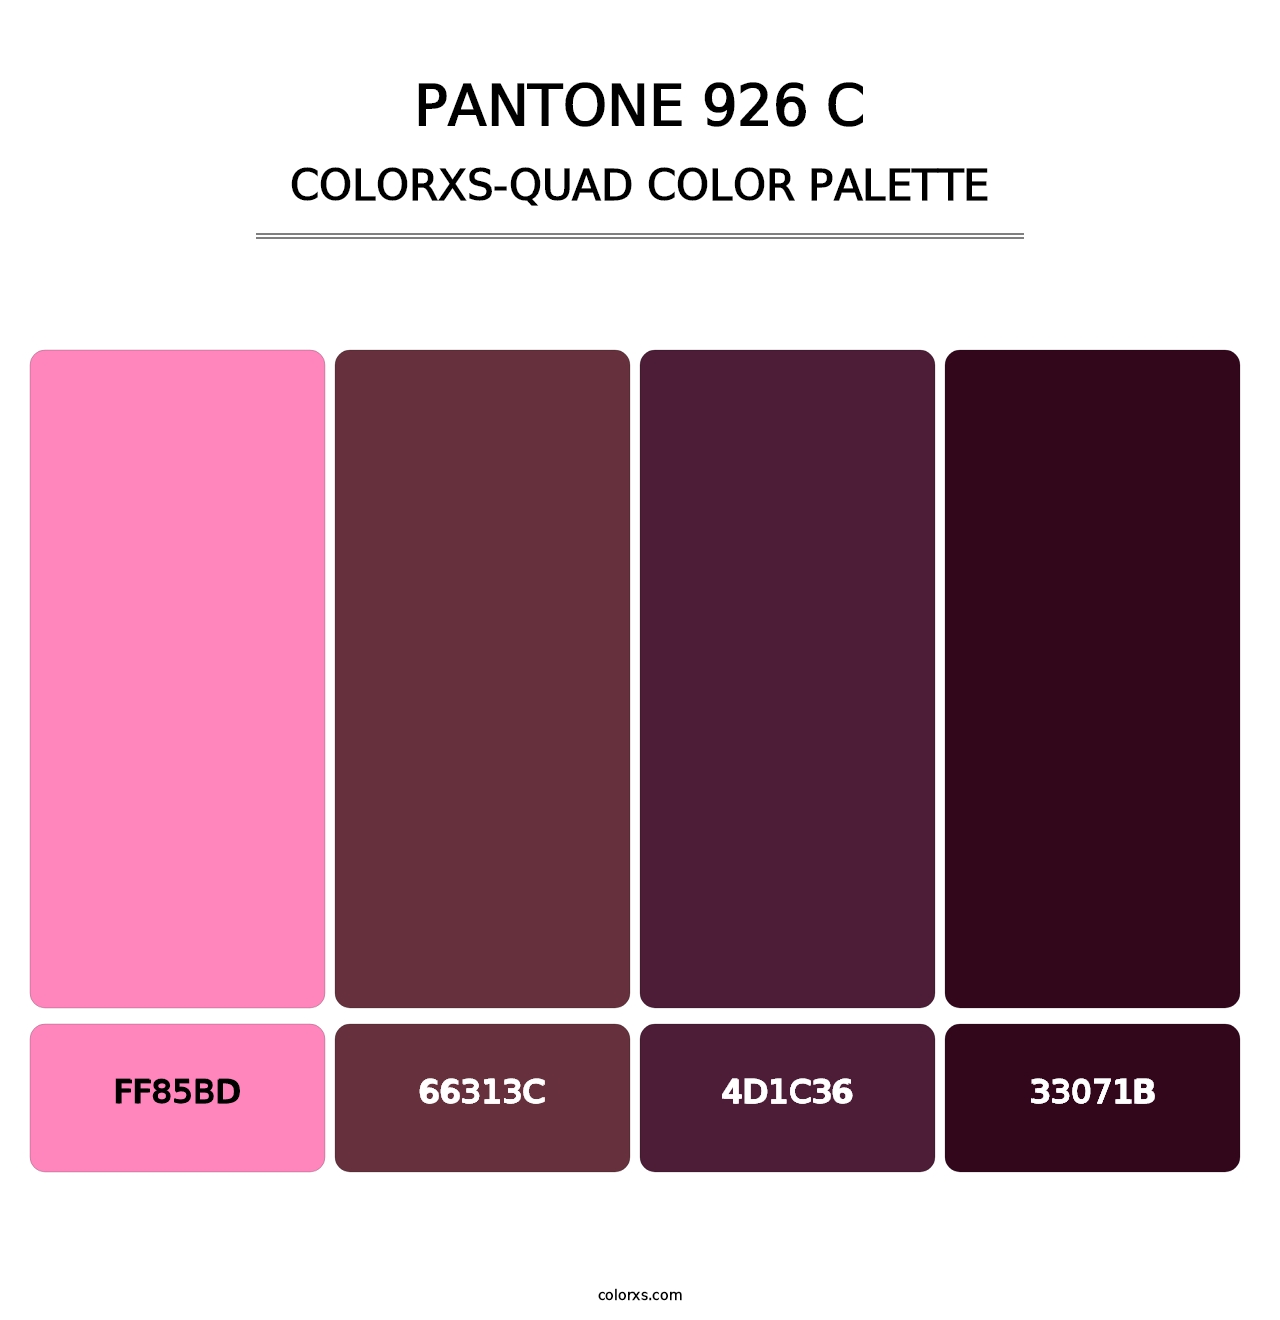 PANTONE 926 C - Colorxs Quad Palette